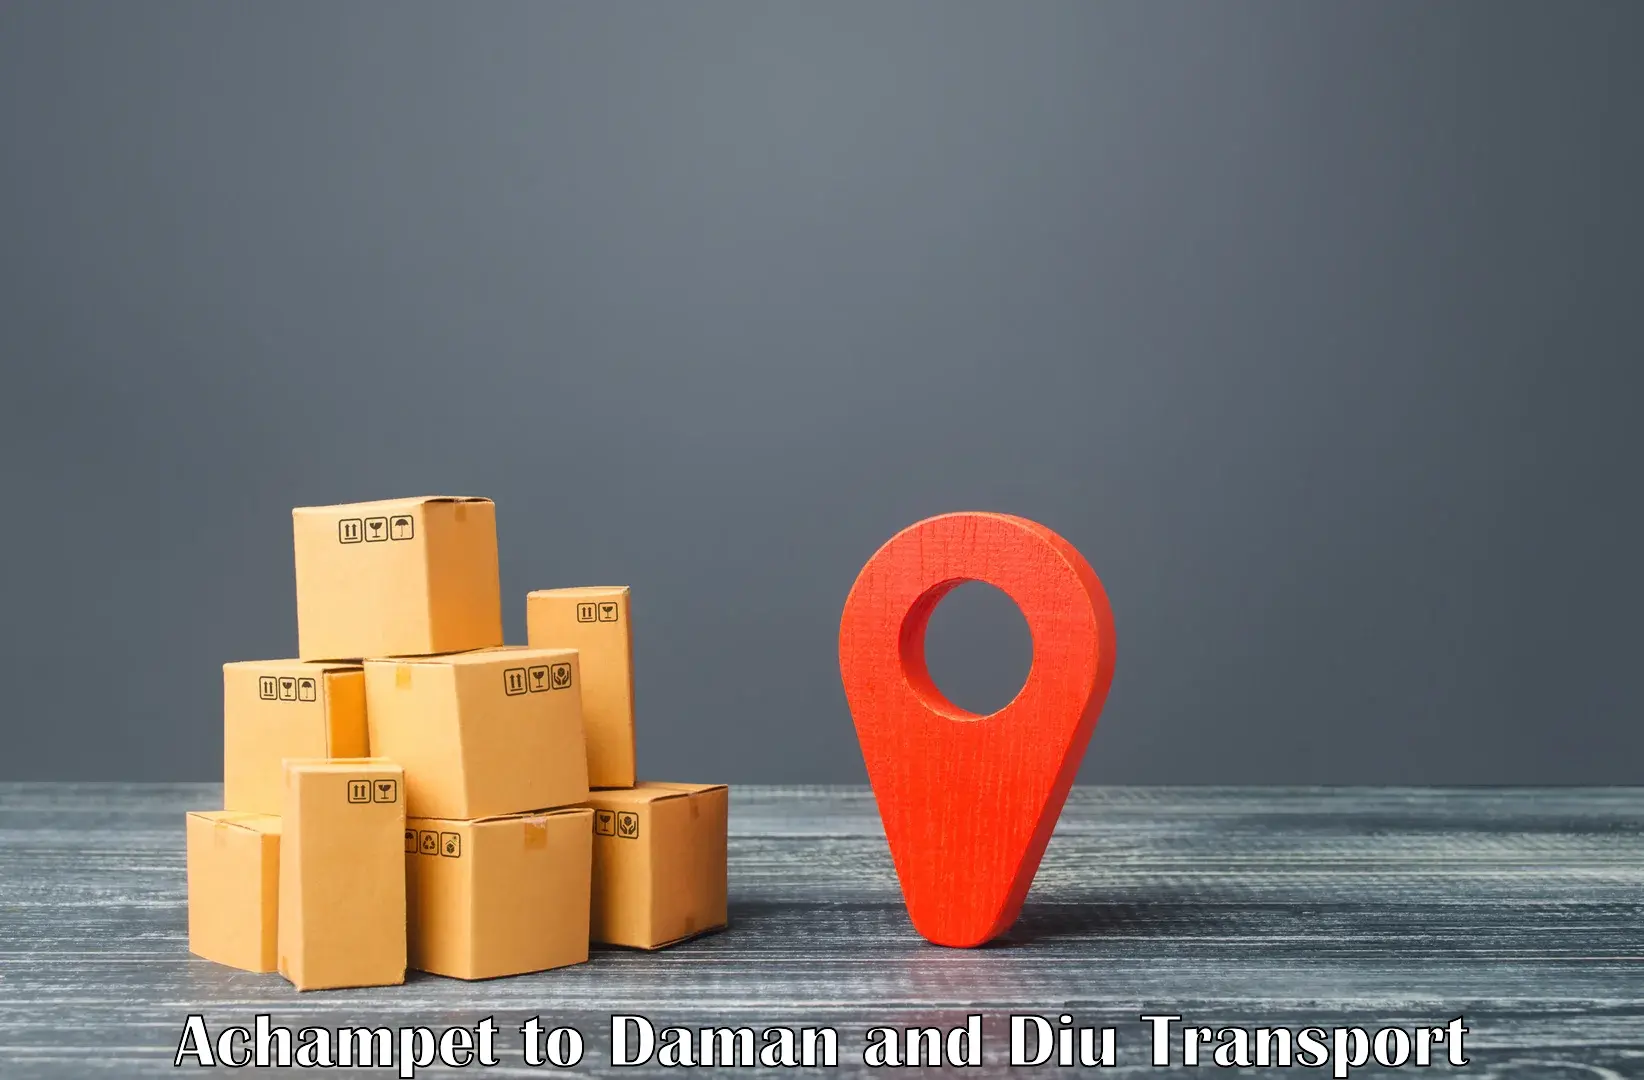 Cargo transport services Achampet to Daman